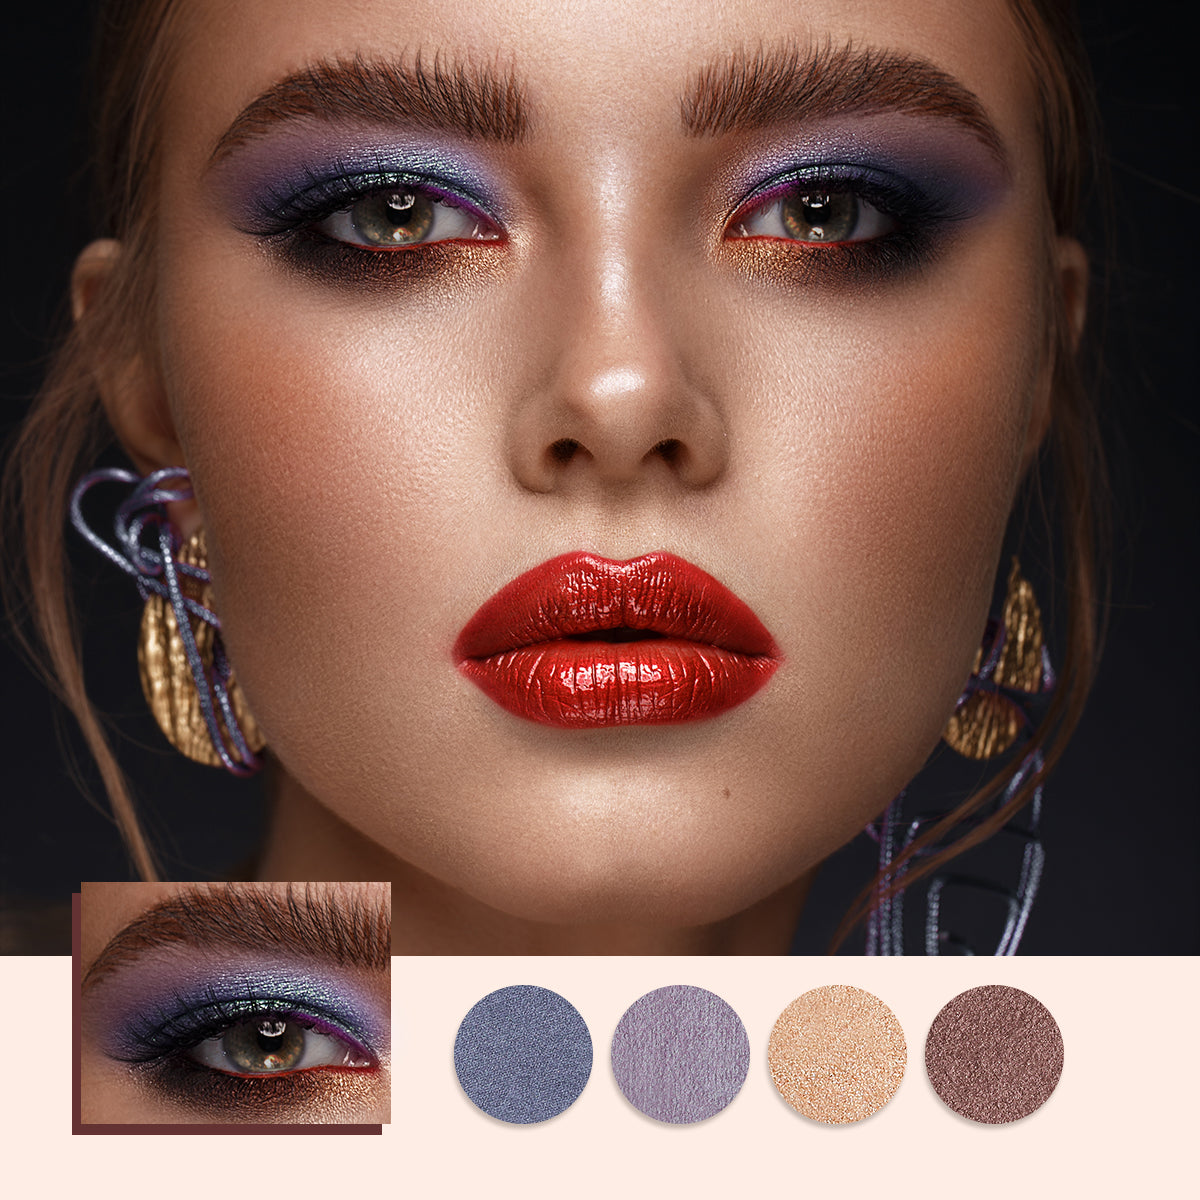 Voorafgaan Dankbaar klok Catkin Seasonal Matte Shimmer Eyeshadow Palette C08 Purple Eyeshadow